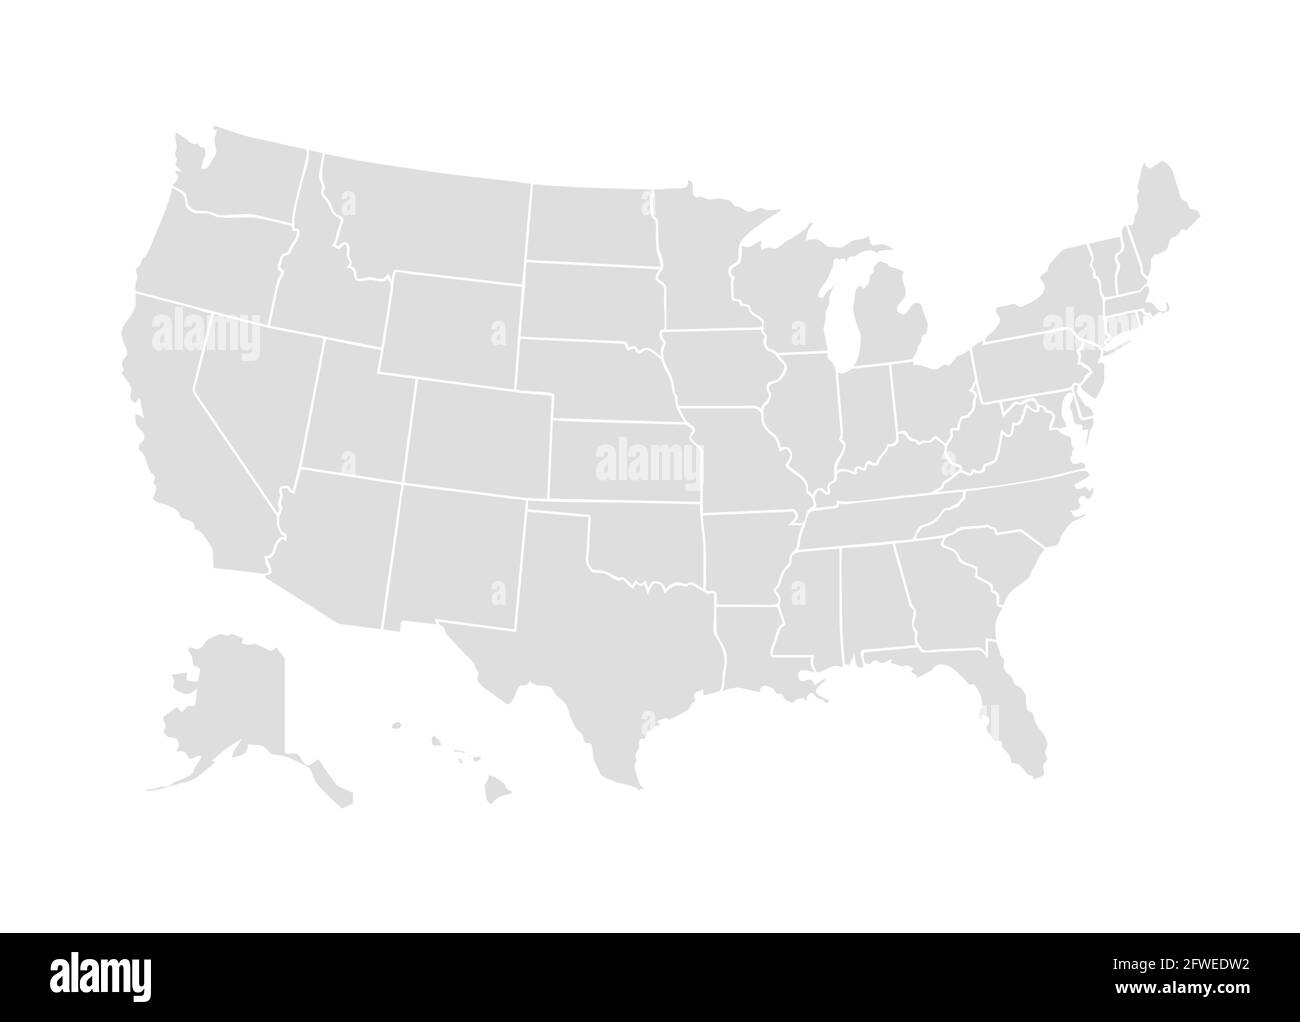 Vektor usa Karte amerika Symbol. Abbildung der Weltkarte der Vereinigten Staaten von amerika Stock Vektor